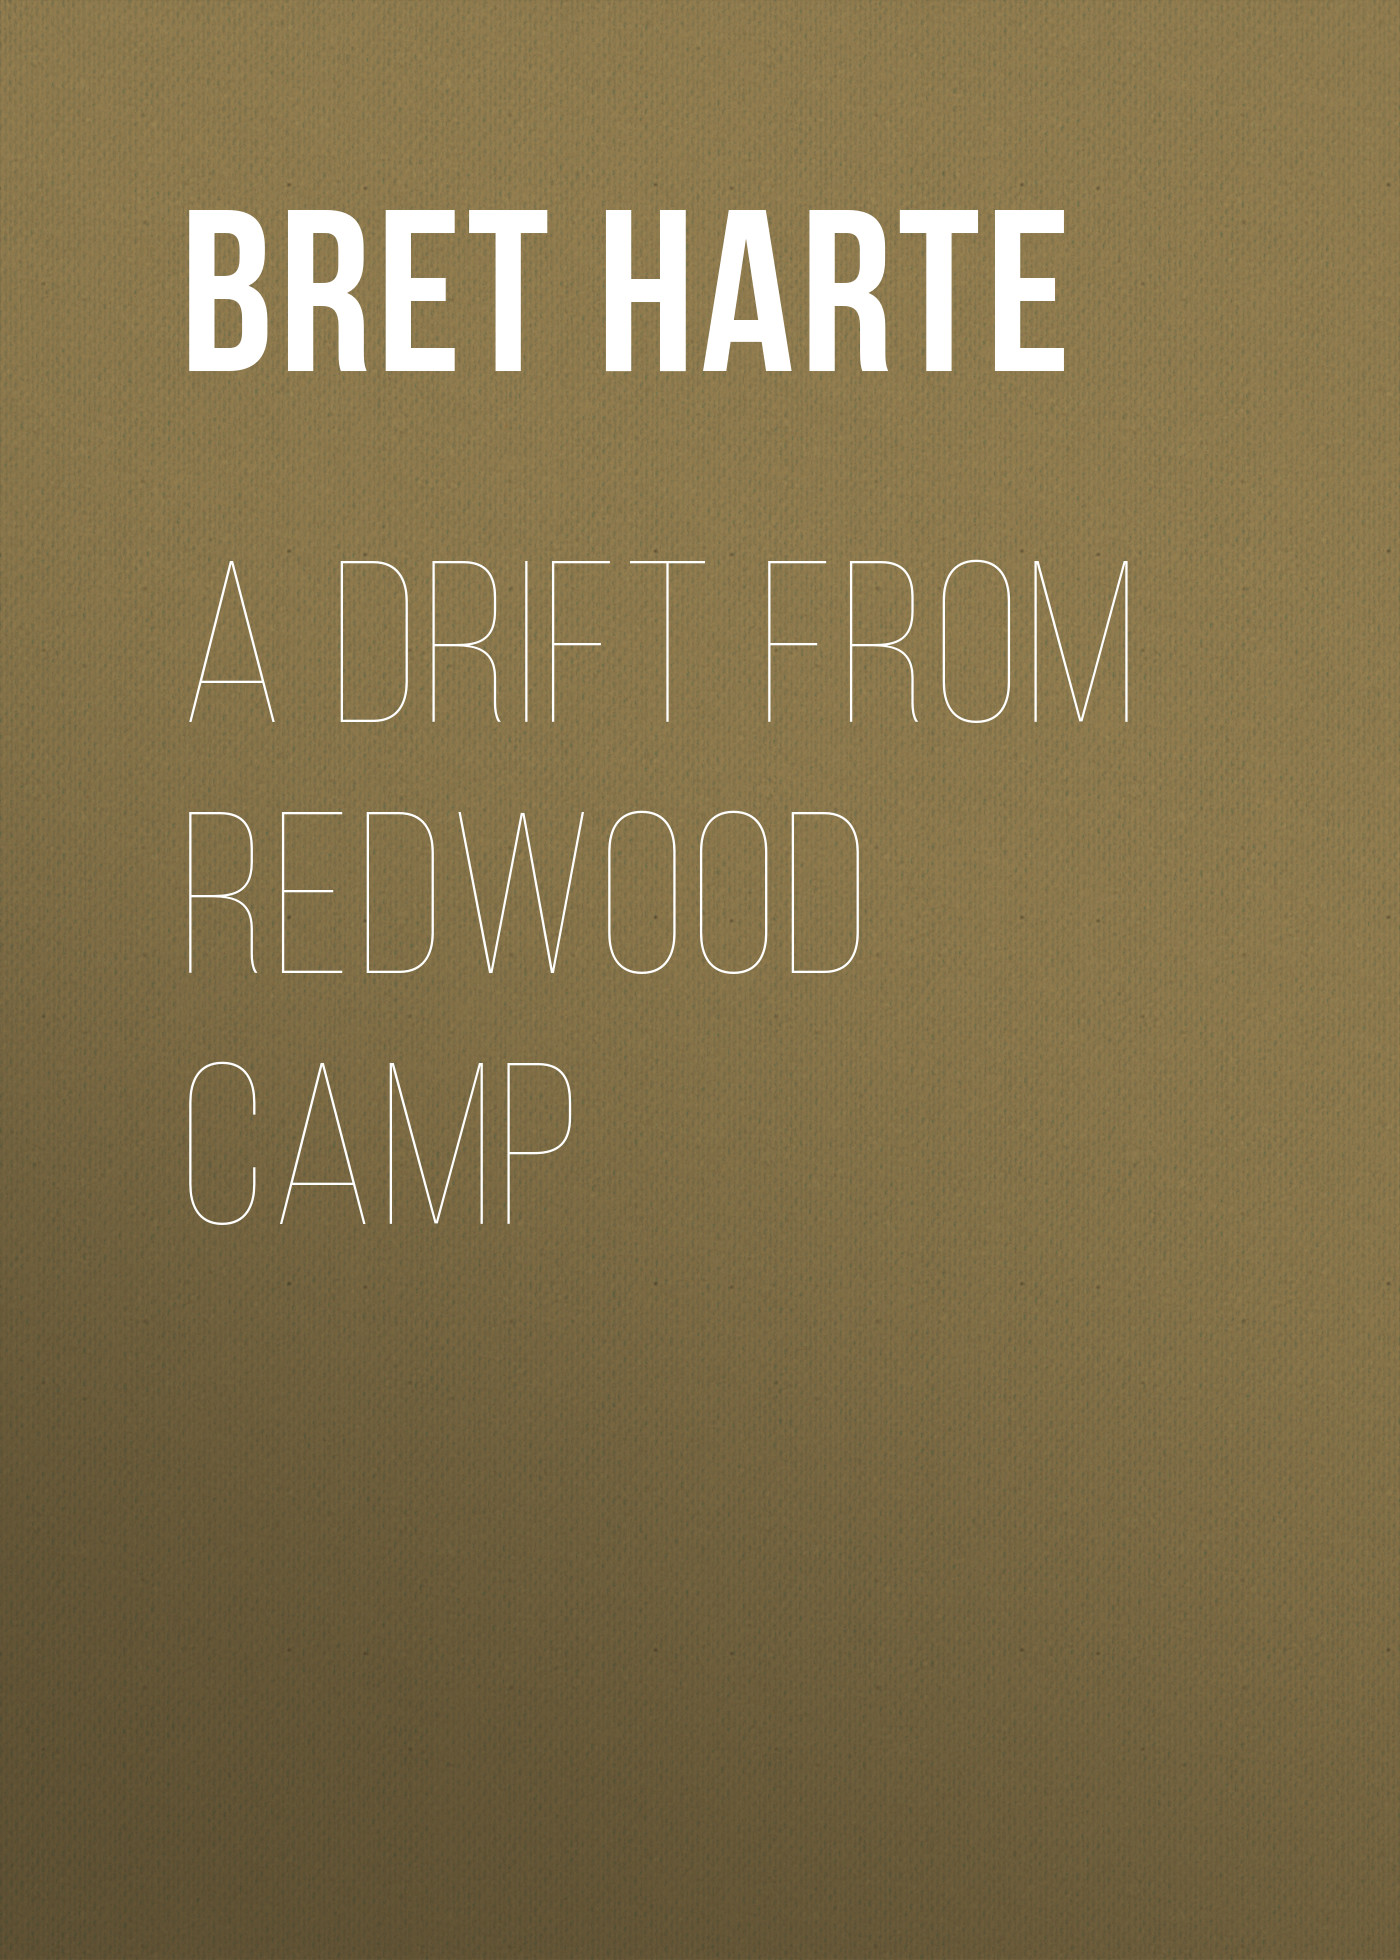 Книга A Drift from Redwood Camp из серии , созданная Bret Harte, может относится к жанру Зарубежная фантастика, Литература 19 века, Зарубежная старинная литература, Зарубежная классика. Стоимость электронной книги A Drift from Redwood Camp с идентификатором 36324636 составляет 0 руб.